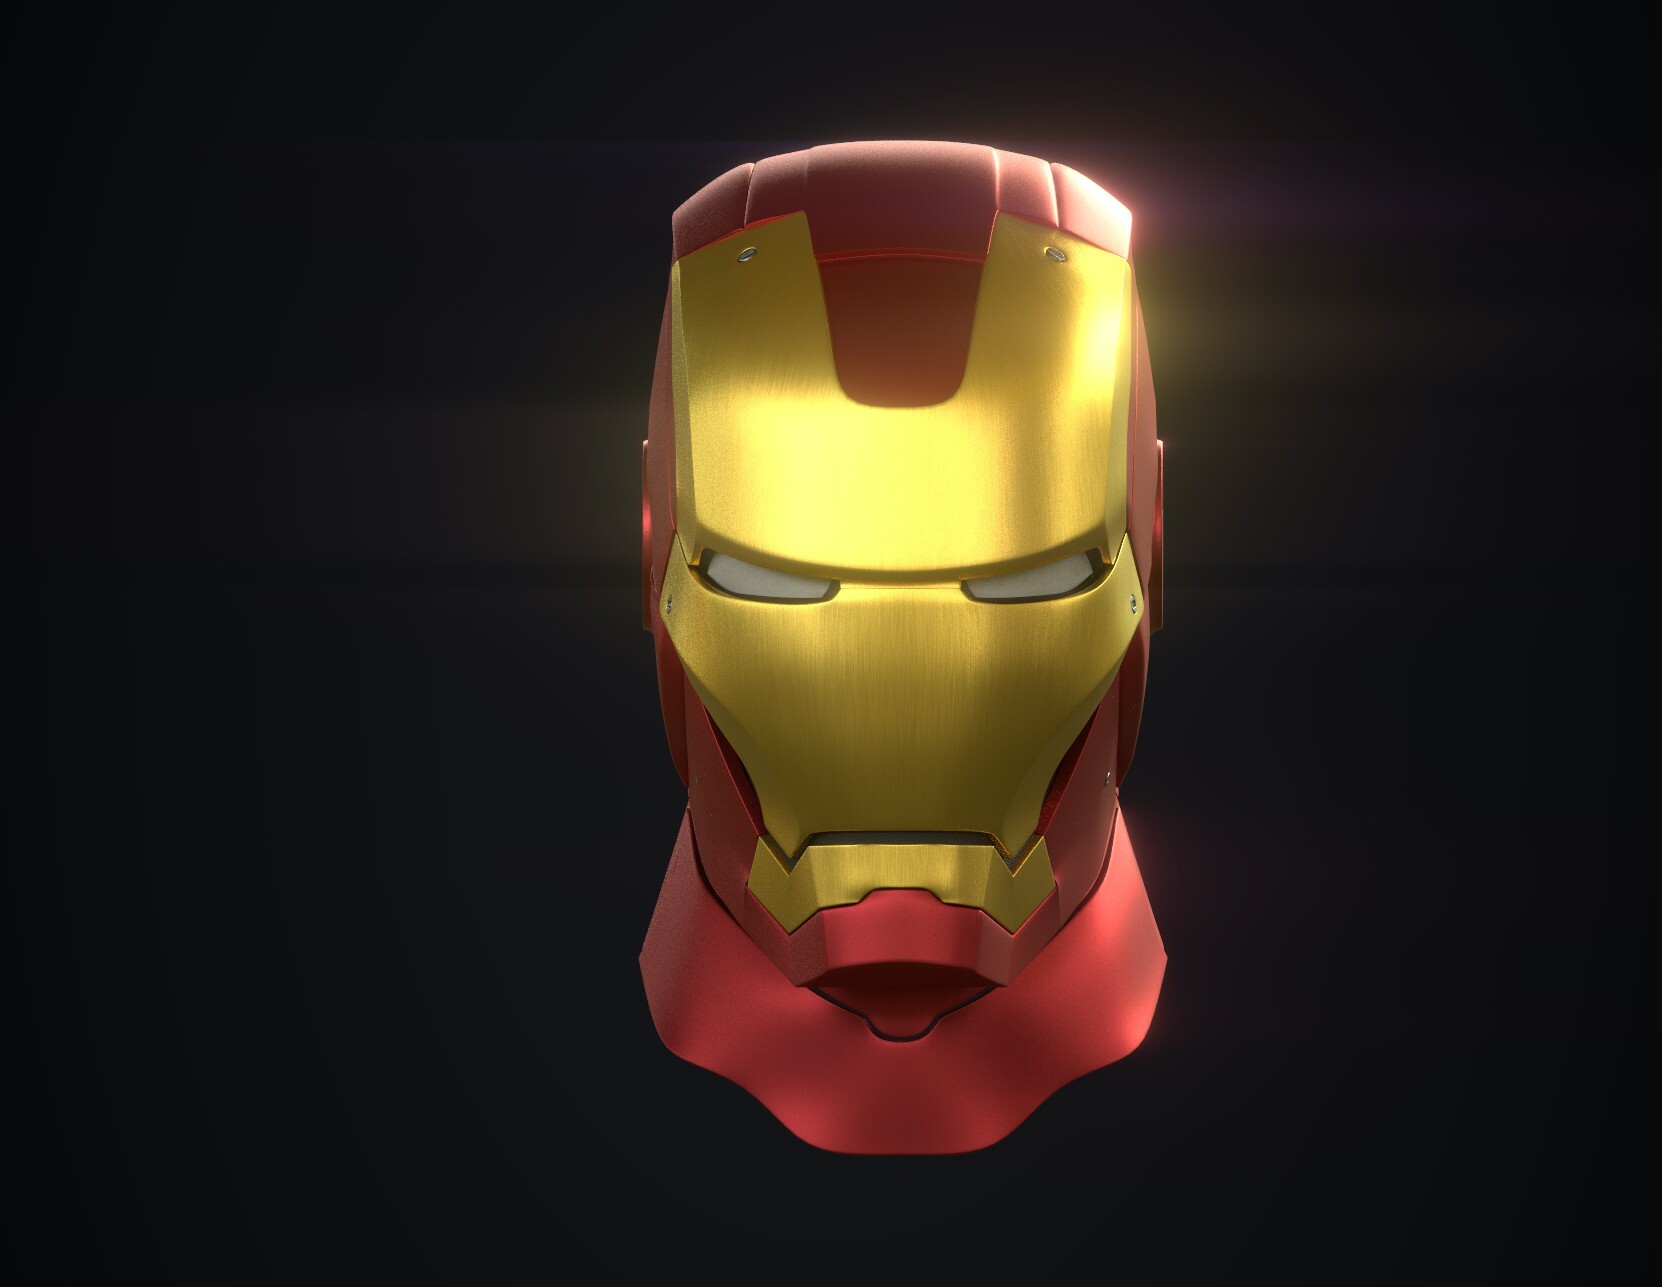 Hạt Nhân Mark 3: Một trong những bộ giáp đáng kinh ngạc nhất của Iron Man - đó chính là Hạt Nhân Mark 3! Giờ đây bạn có thể chiêm ngưỡng hình ảnh chân thật của bộ giáp tại đây. Khám phá những tính năng và khả năng đáng kinh ngạc của Hạt Nhân Mark 3 - một trong những yếu tố quan trọng giúp Iron Man trở thành một siêu anh hùng đích thực.